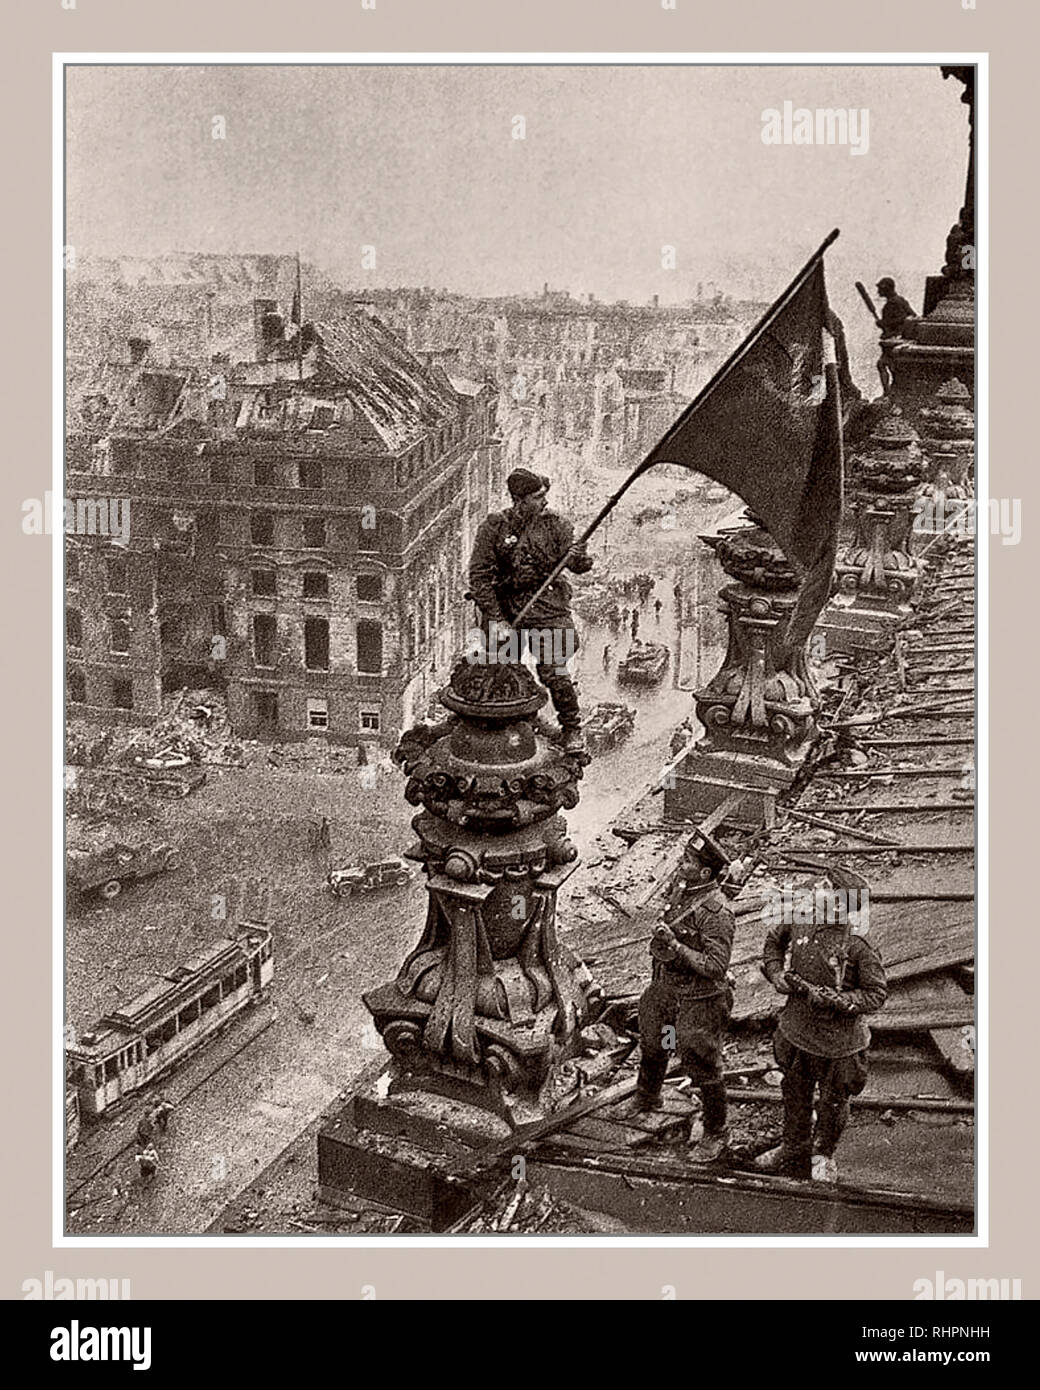 DRAPEAU RUSSE BERLIN 1945 REICHSTAG EMBLÉMATIQUE de la guerre mondiale 2 Allemagne. Un soldat russe levant le drapeau soviétique du marteau et de la faucille au-dessus du drapeau russe nazi de la Chancellerie du Reichstag, une photographie historique de la Seconde Guerre mondiale, prise pendant la bataille de Berlin le 2 mai 1945. Il montre que les troupes de l'Union soviétique Meliton Kantaria et Mikhail Yegorov ont soulevé leur drapeau sur l'ancien siège du pouvoir nazi, le Reichstag Berlin Allemagne Banque D'Images